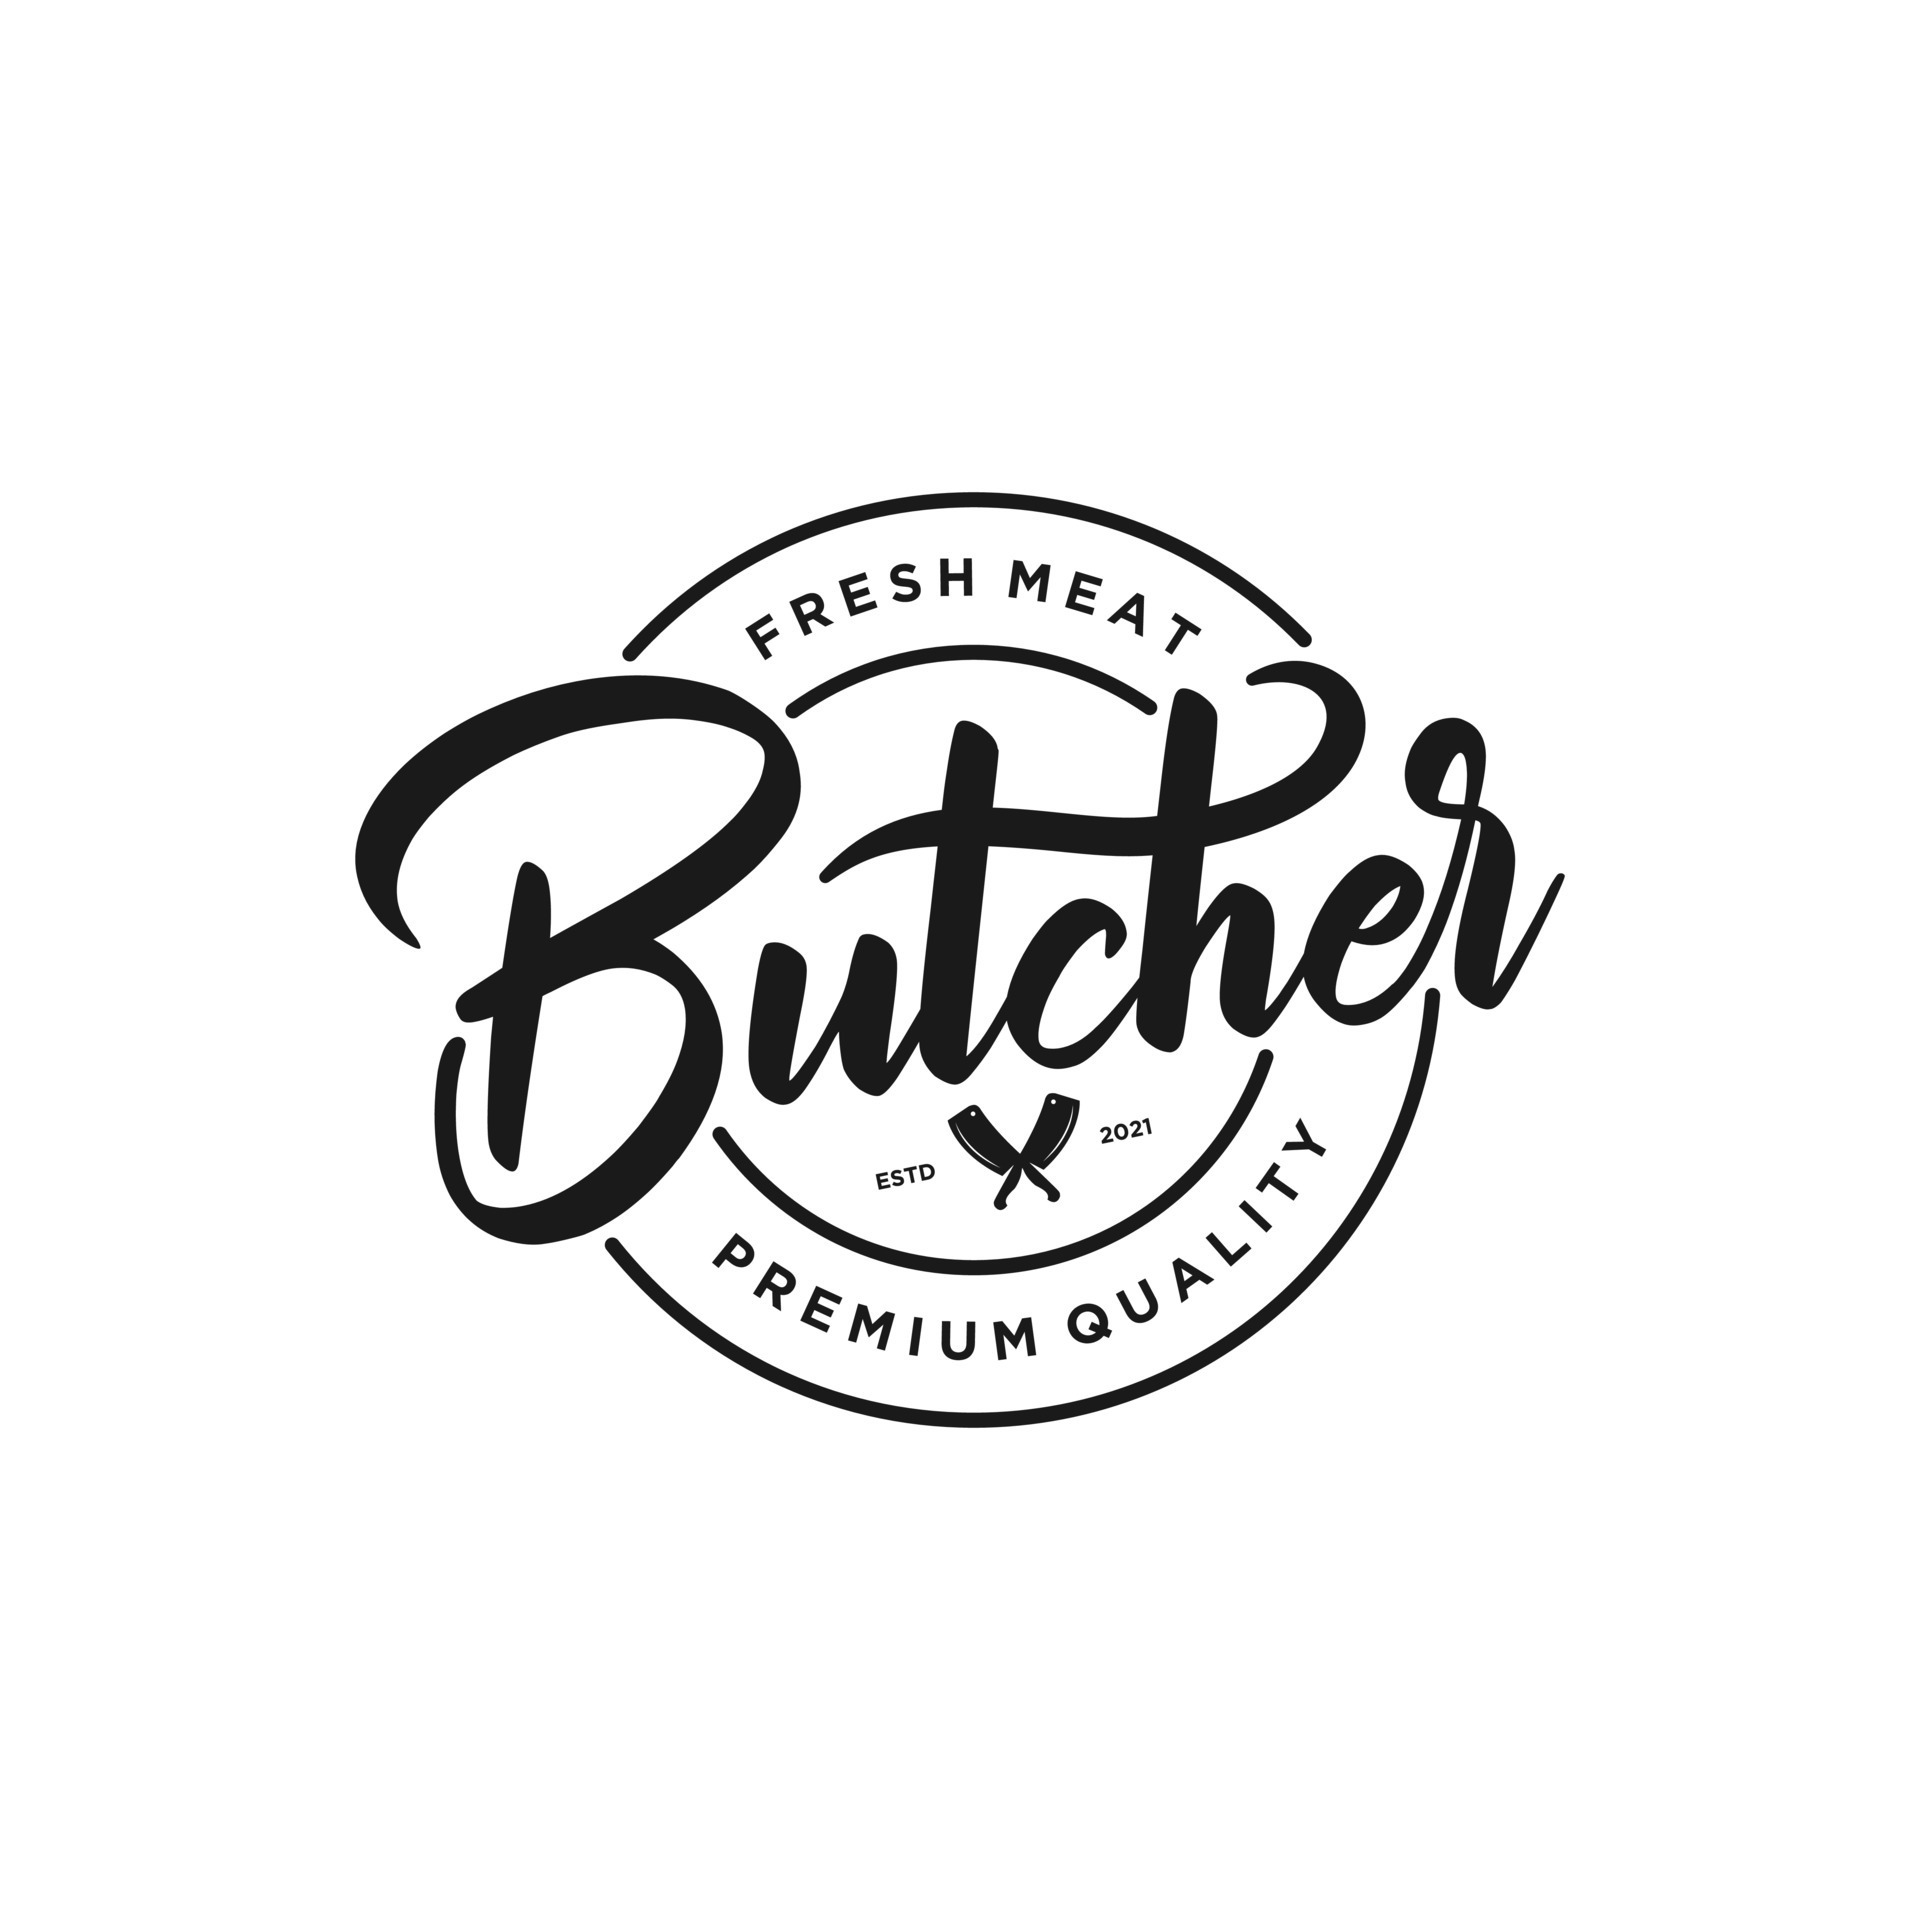 Butcher Shop hand written lettering logo with label badge emblem design ...